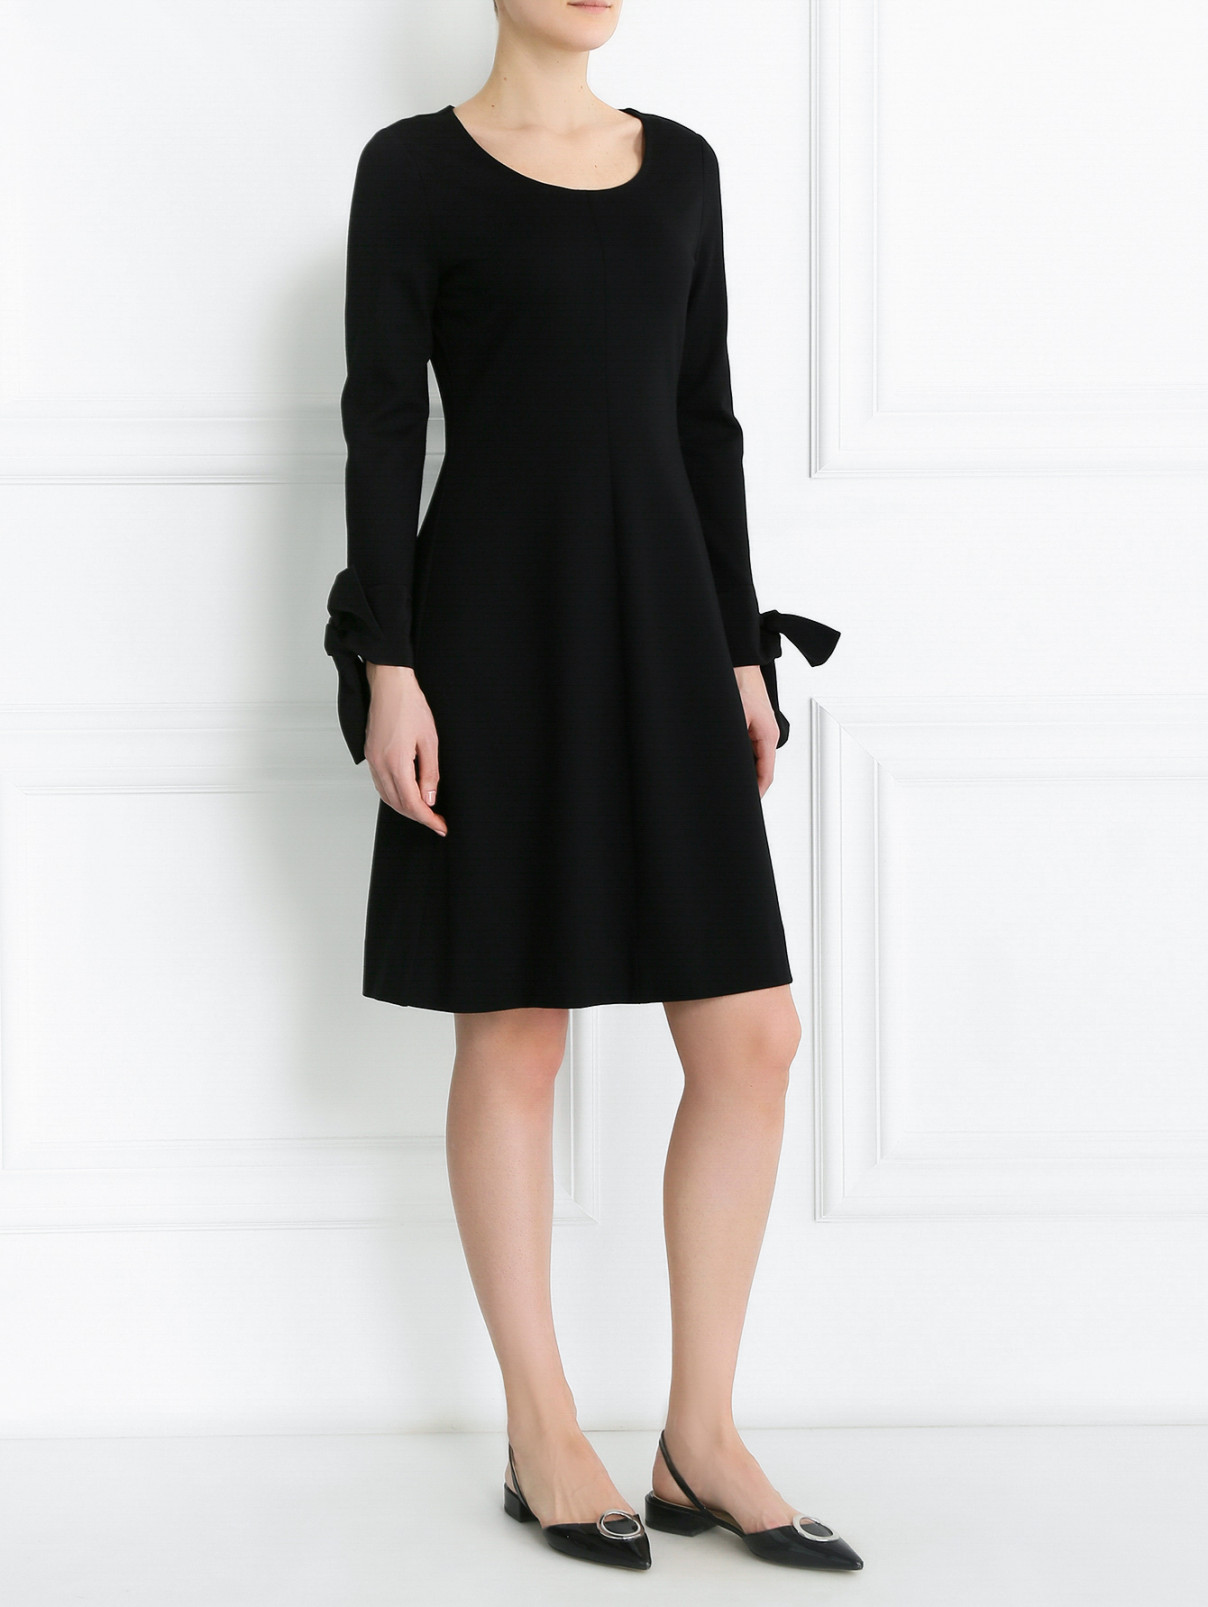 Платье расклешенного кроя с декоративными манжетами Dorothee Schumacher  –  Модель Общий вид  – Цвет:  Черный